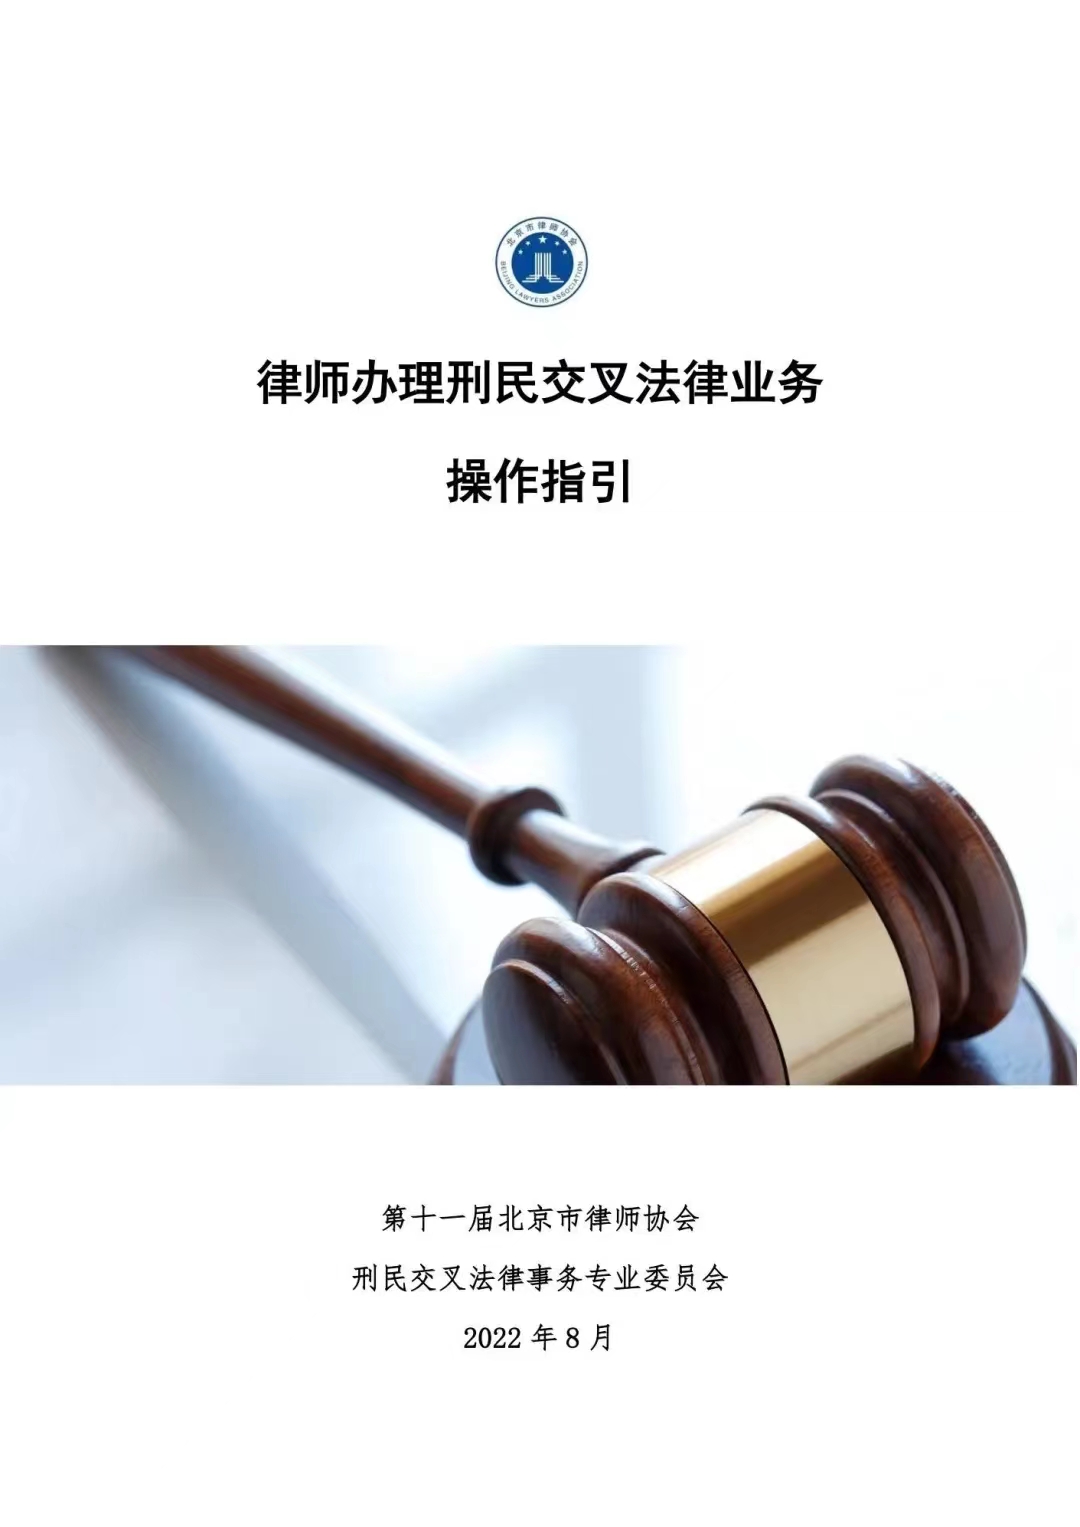 Disposiciones del Tribunal Popular Supremo sobre varias cuestiones relativas a la aplicación de la ley en la tramitación de los casos de Habeas Corpus